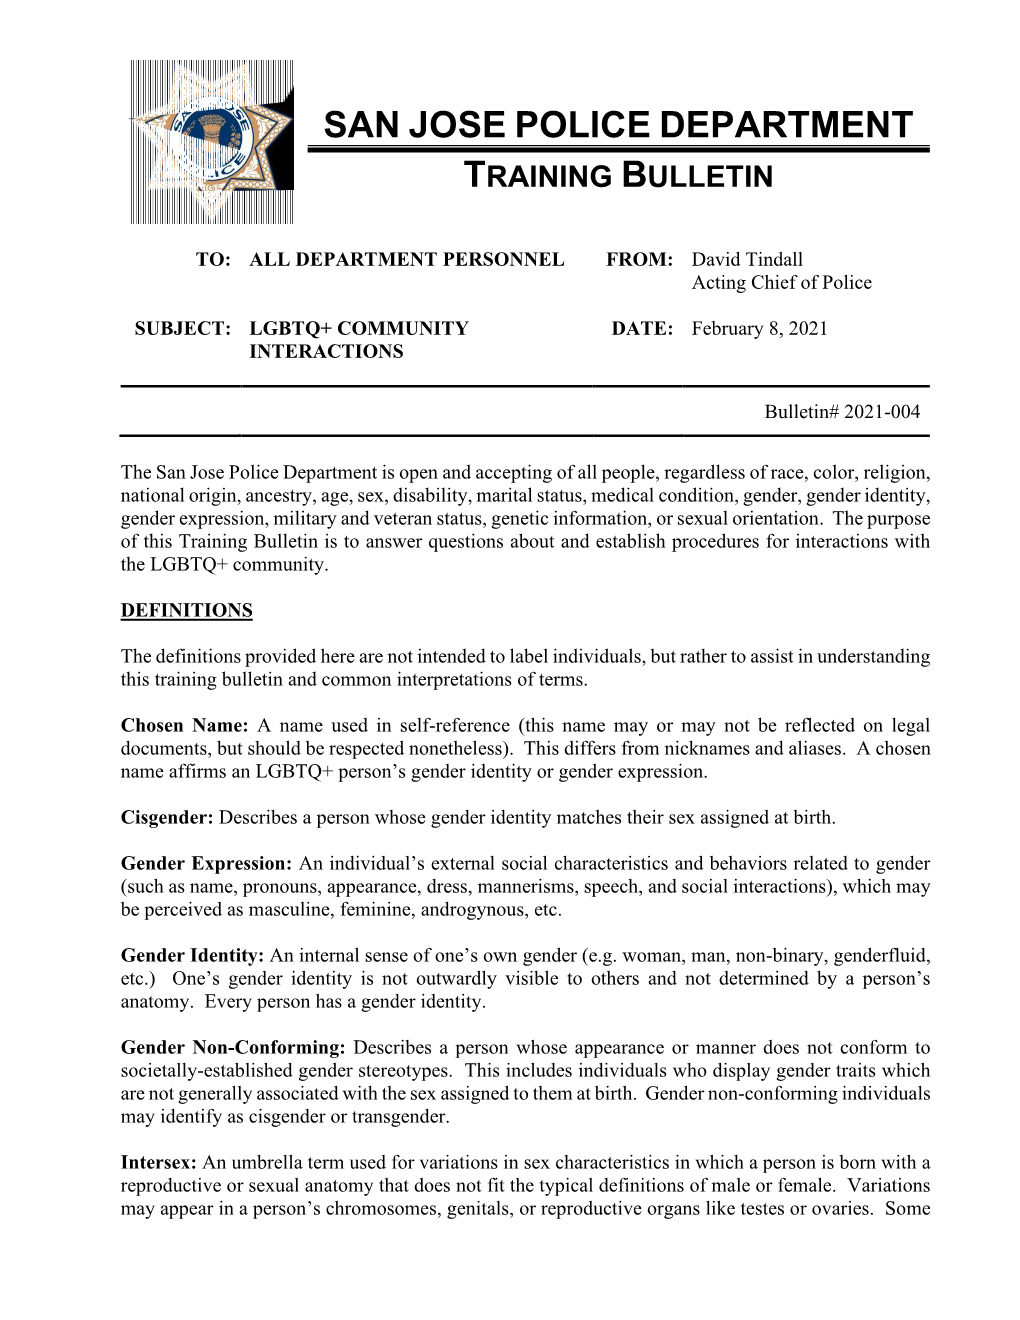 Training Bulletin 2021-004 LGBTQ